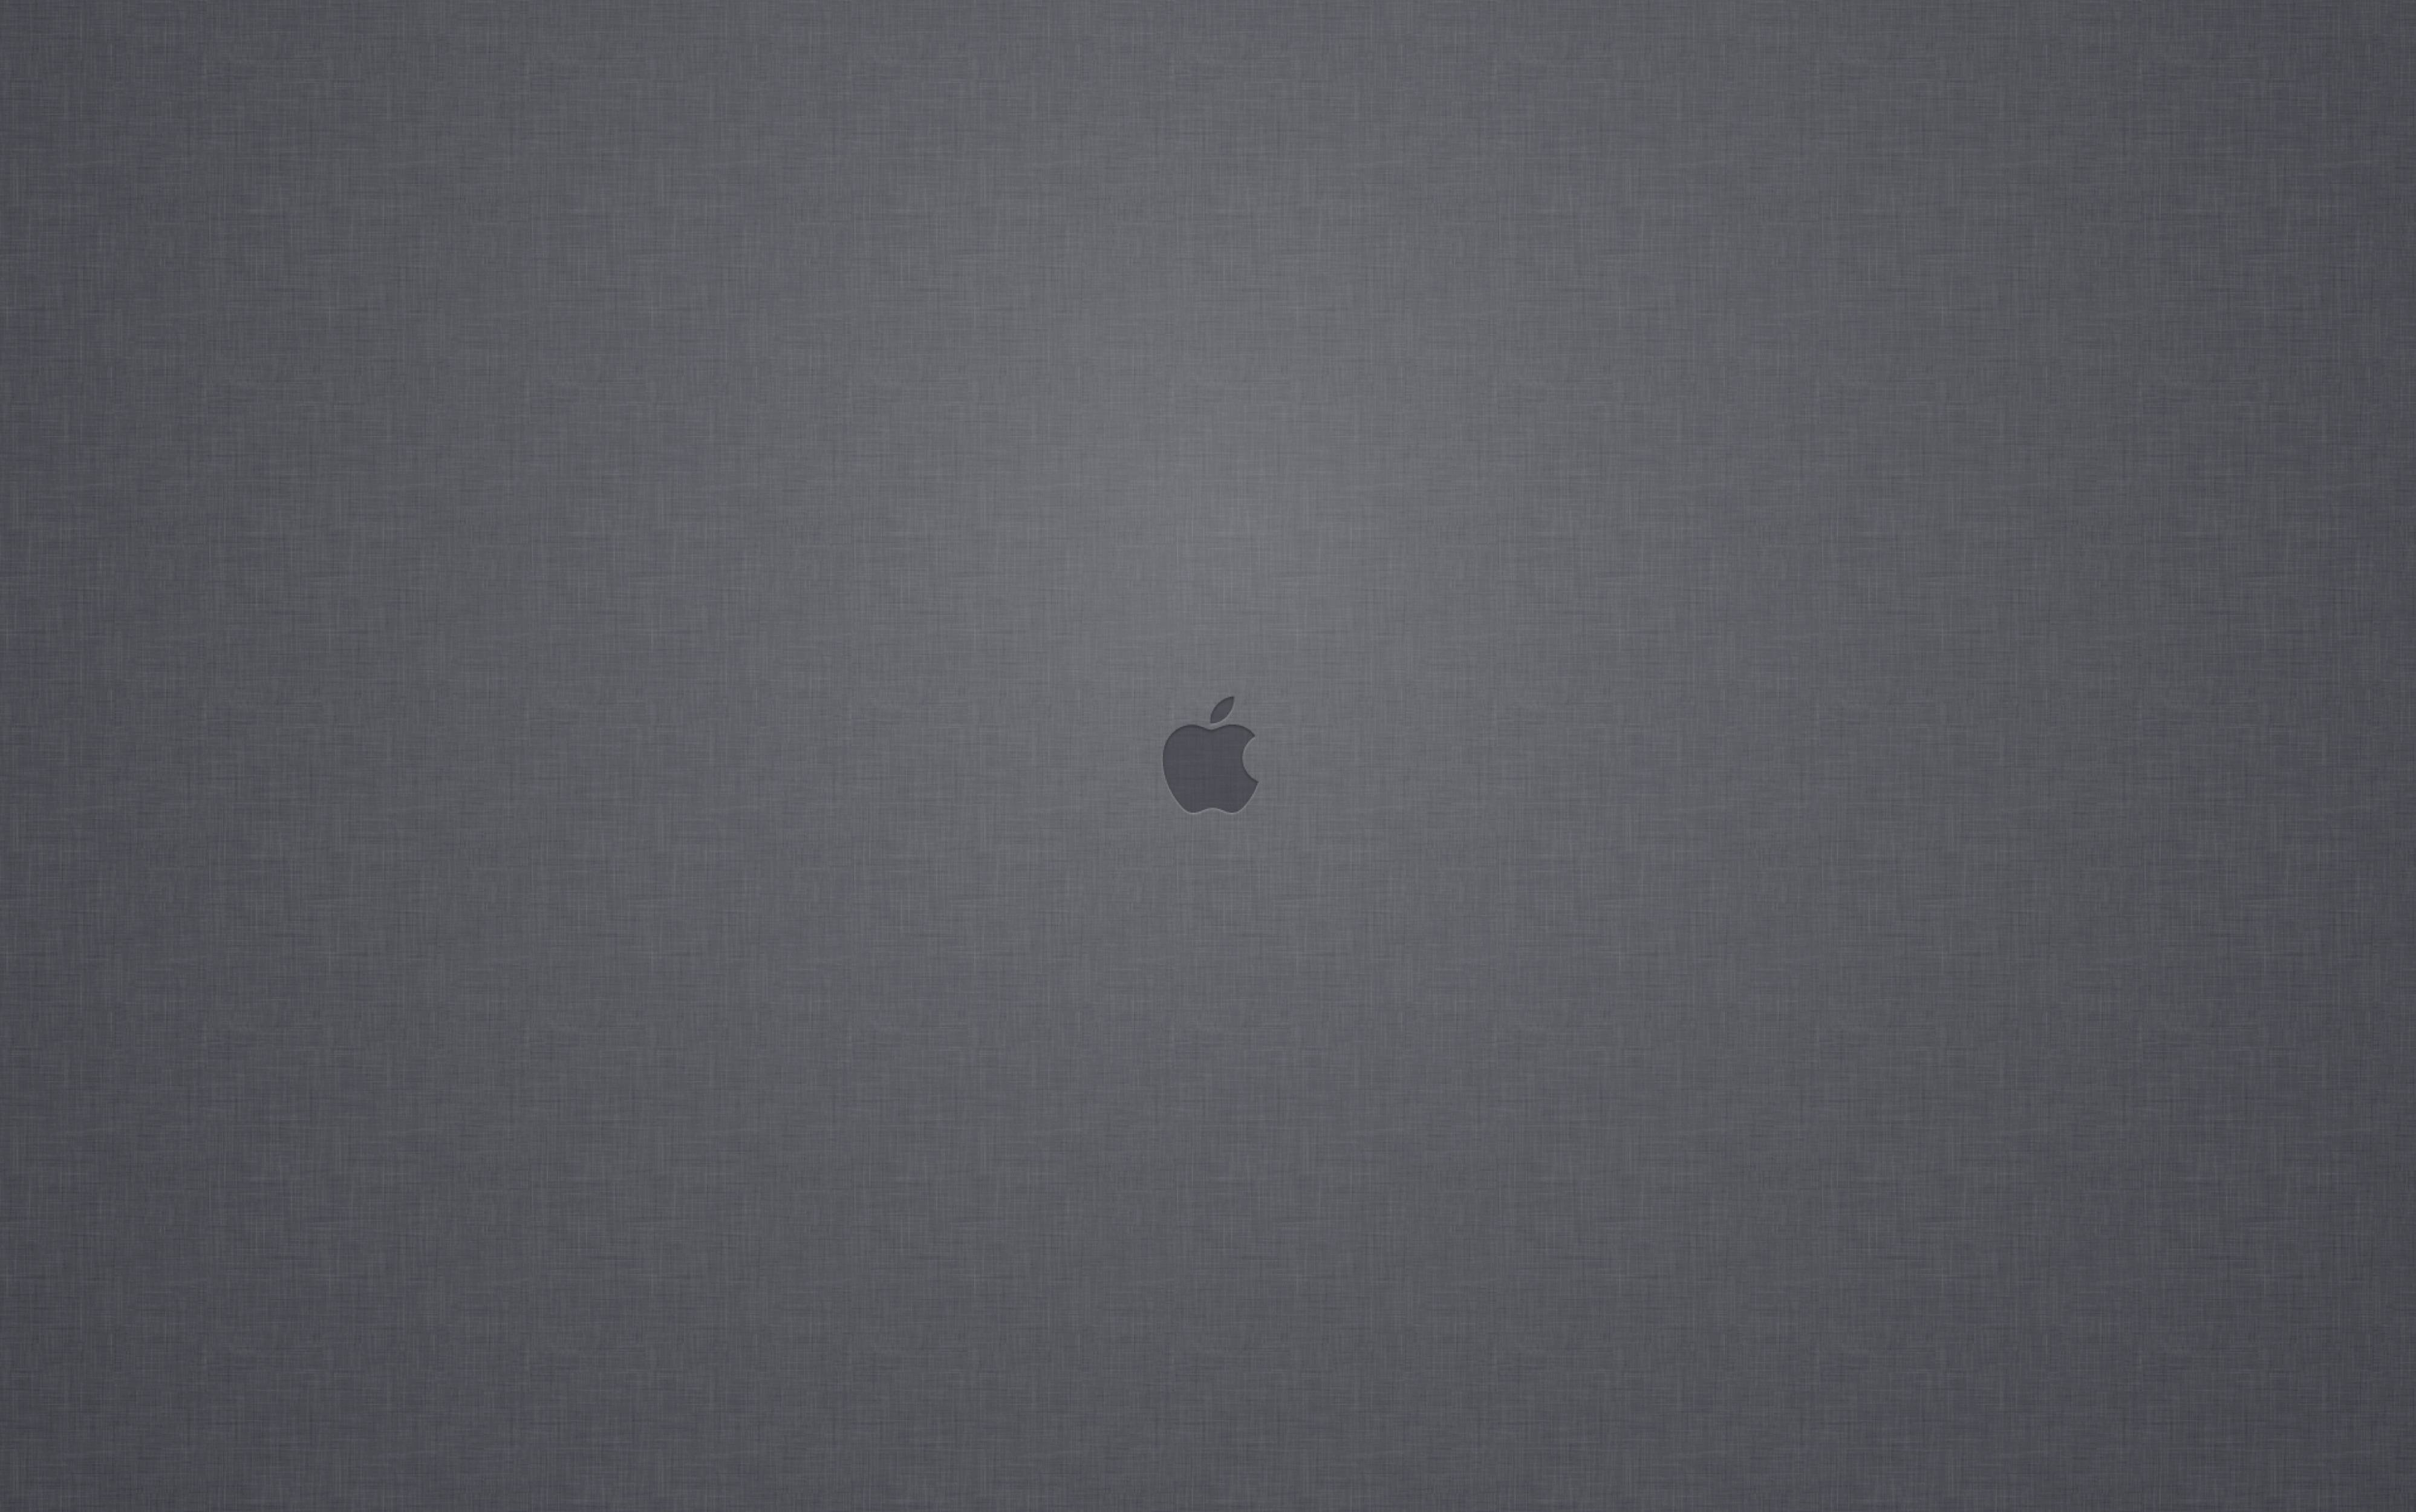 Linen & Apple Logo Wallpaper from the Mac OS X Lion Login Screen